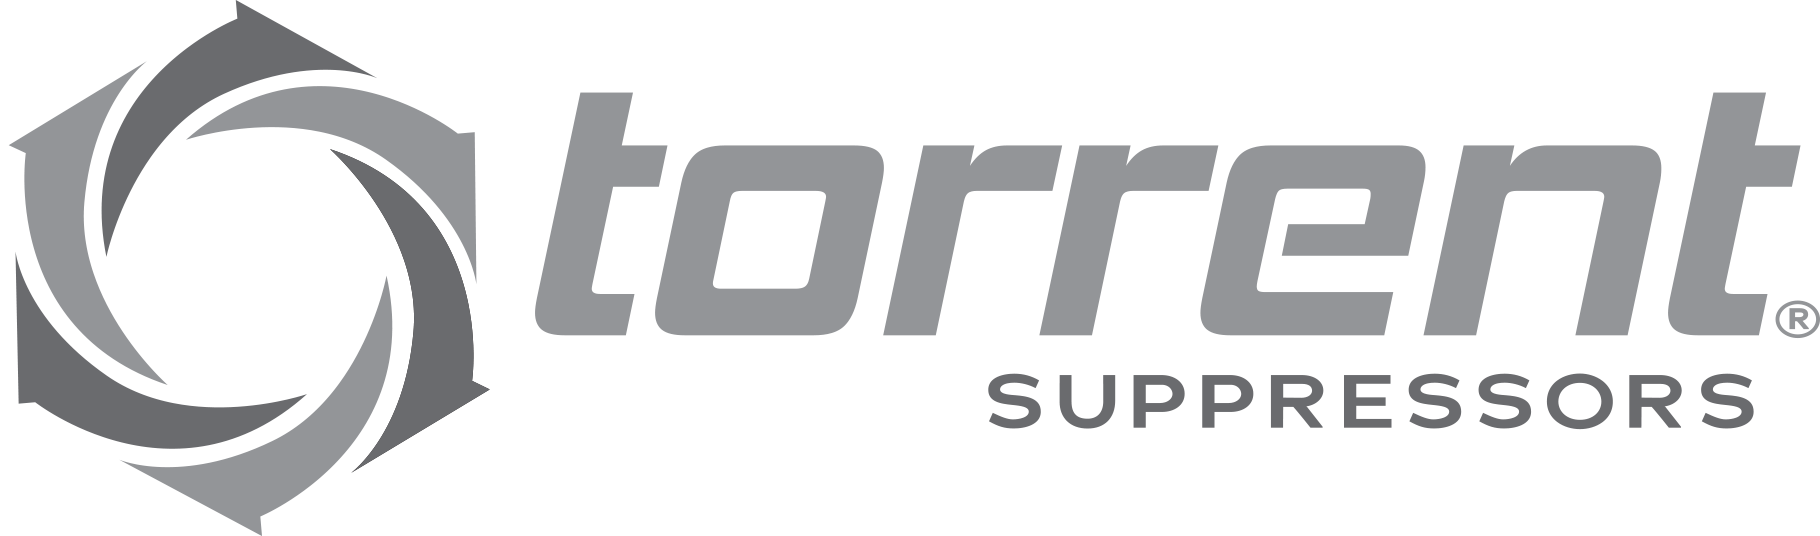 Torrent Suppressors